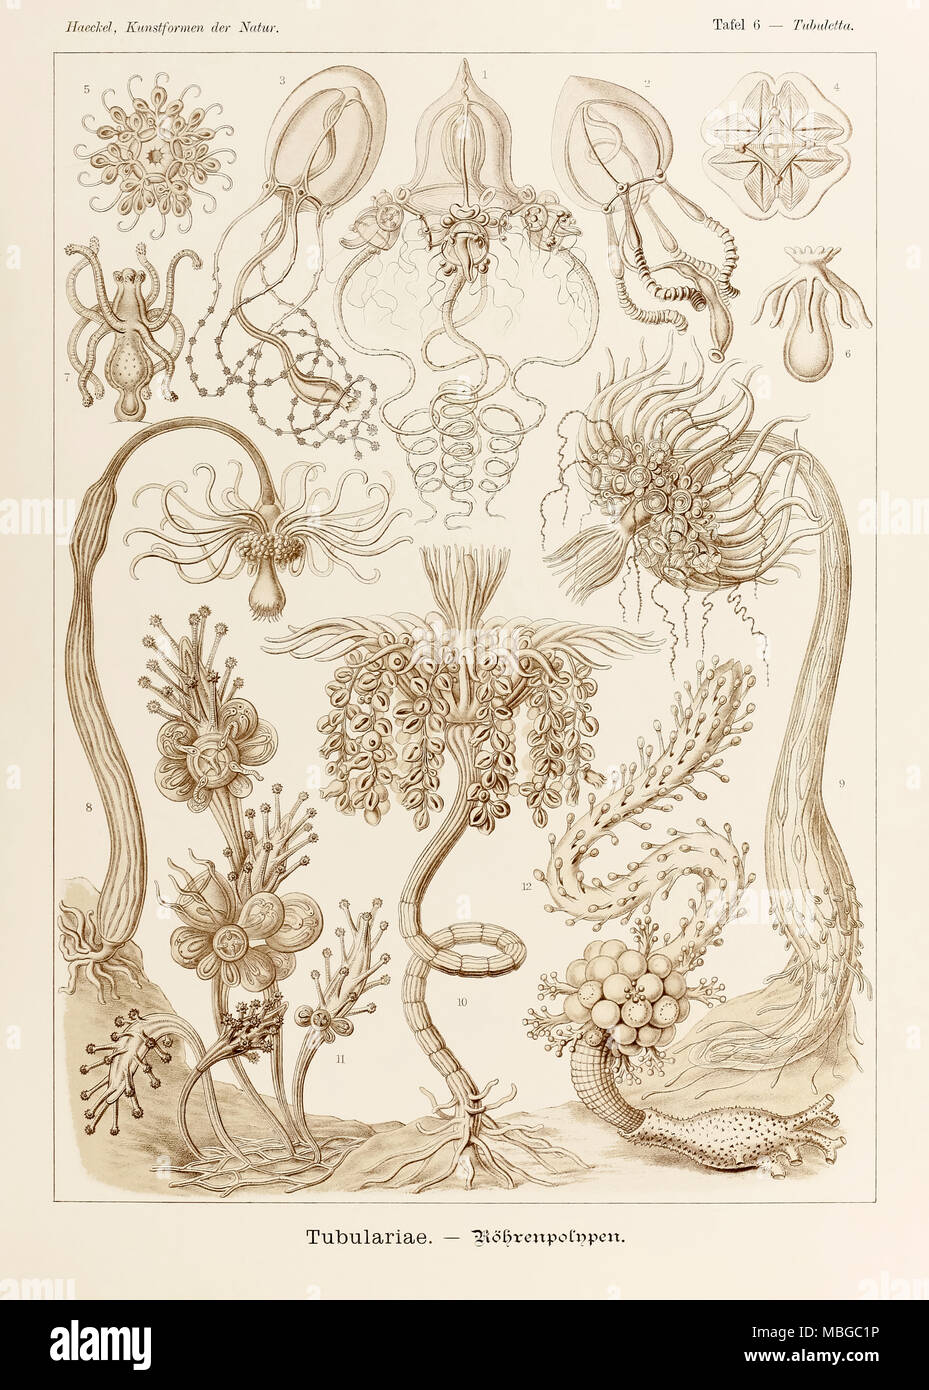 Platte 6 Tubuletta Tubulariae von 'Kunstformen der Natur' (Kunstformen in der Natur), illustriert von Ernst Haeckel (1834-1919). Weitere Informationen finden Sie unten. Stockfoto